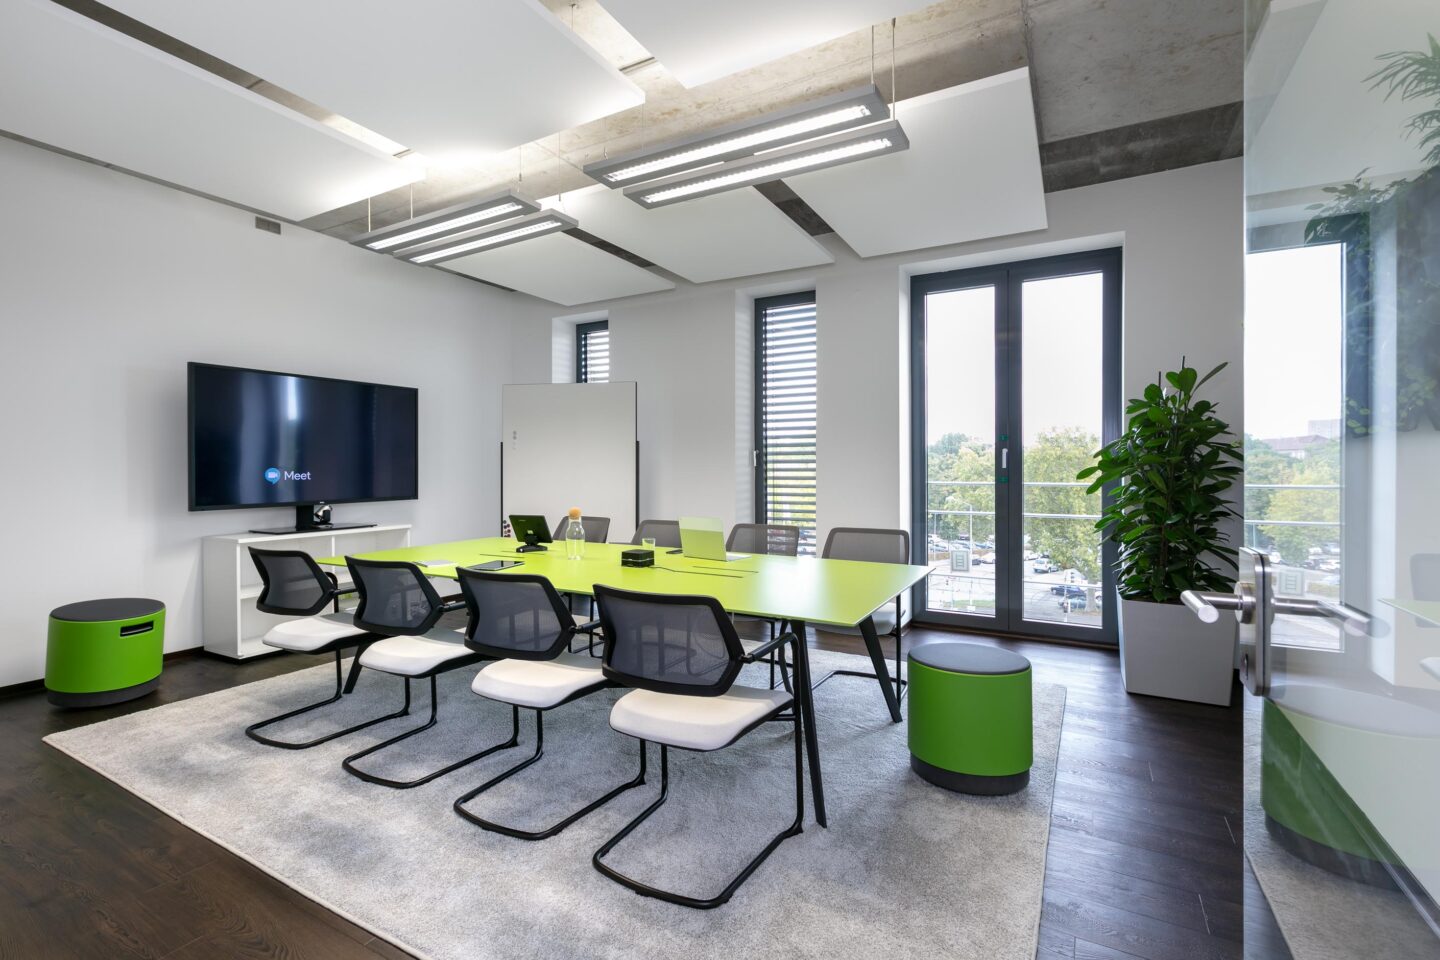 Inovex GmbH Karlsruhe │ IT company │ meeting room │ agile working